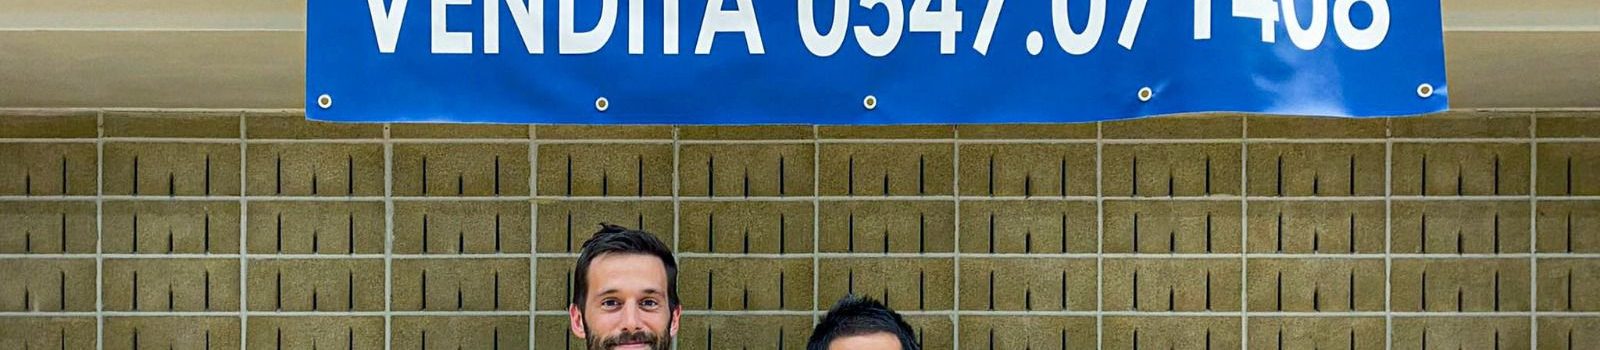 Ufficiale: Ruben Casadei torna alla Futsal Cesena